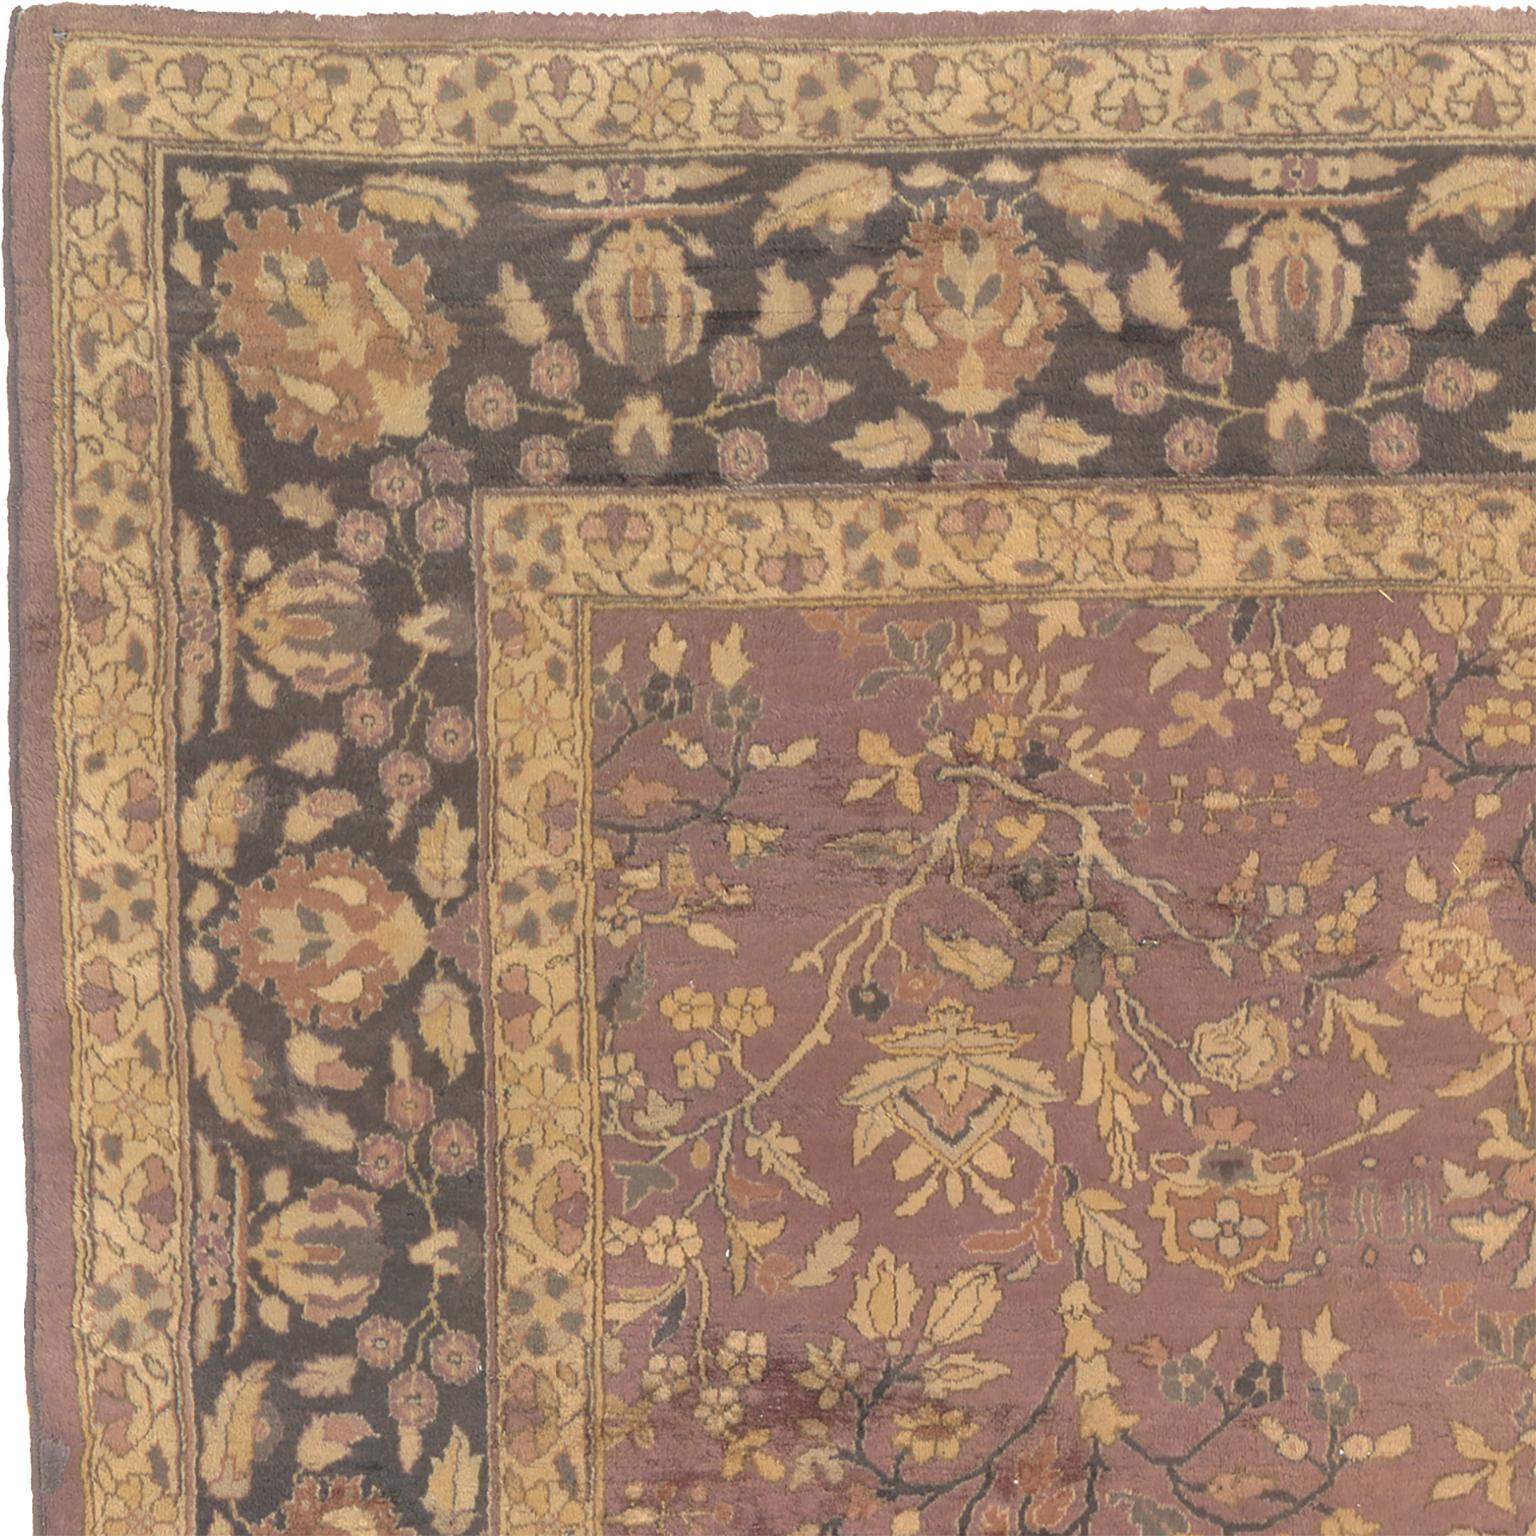 Antique Indo-Persian rug
India, circa 1920
Geometric design
11'9